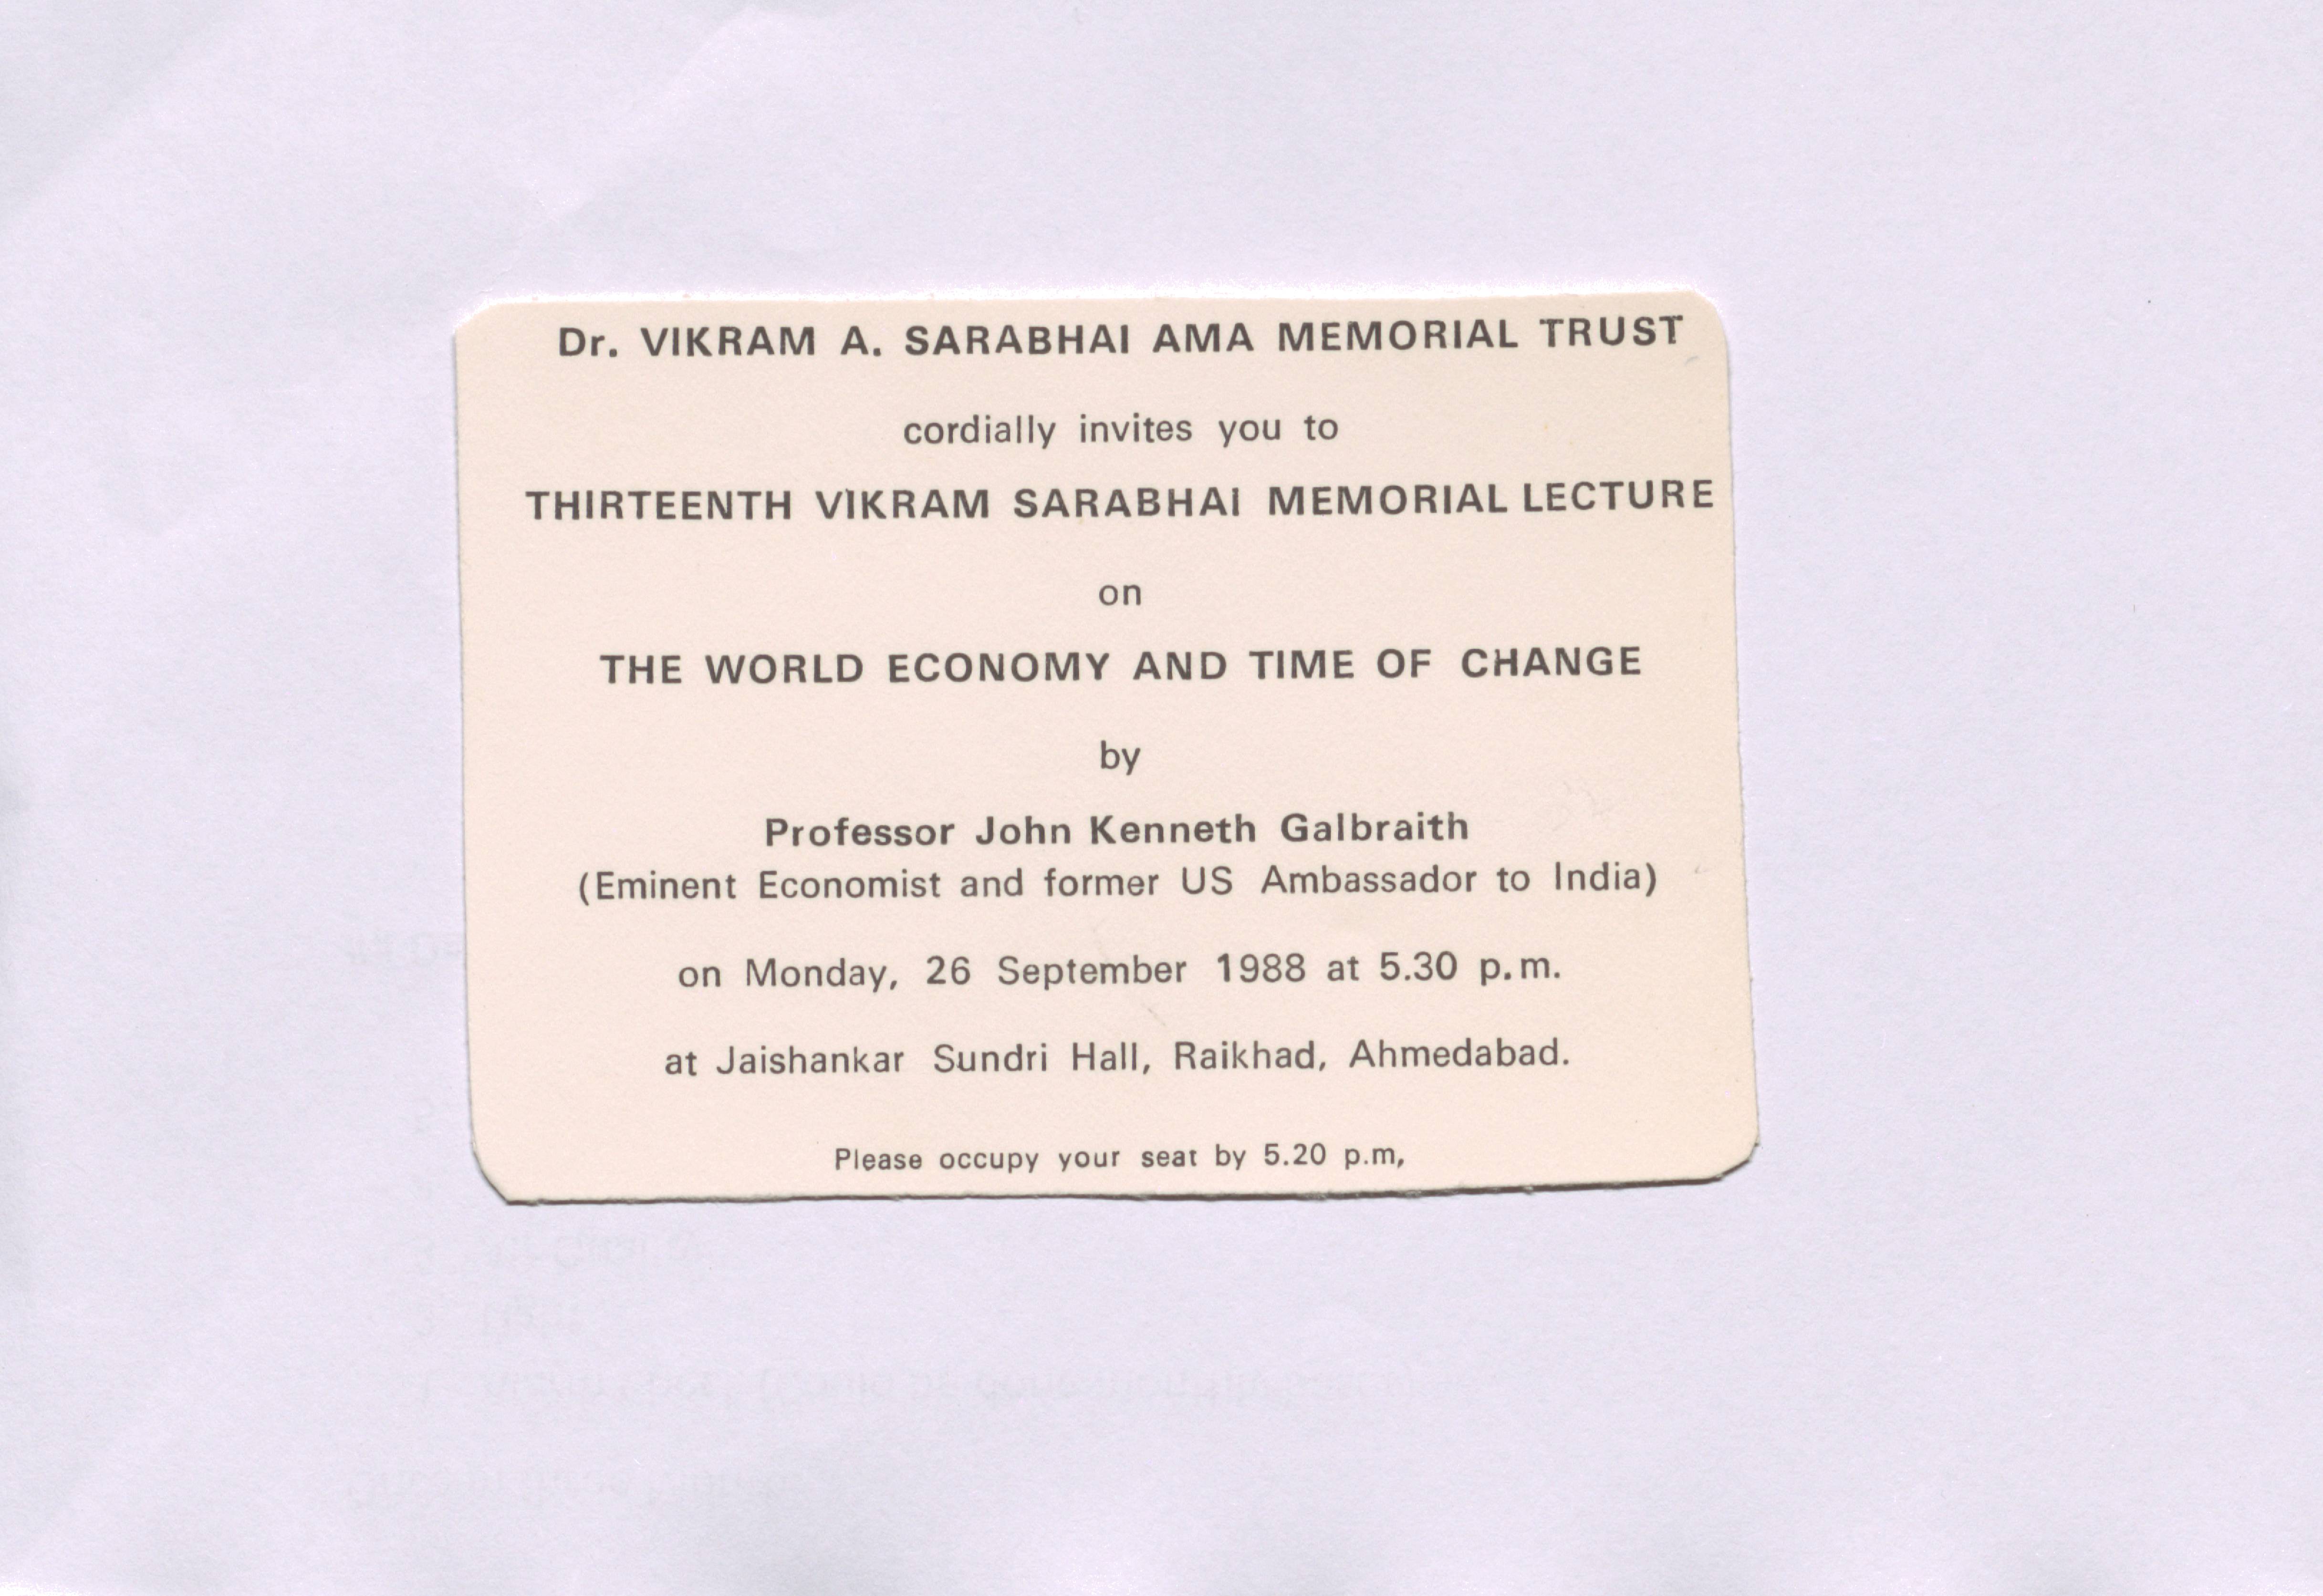 13th Vikram Sarabhai Memorial Lecture at Dr. Vikram A. Sarabhai Ama Memorial Trust